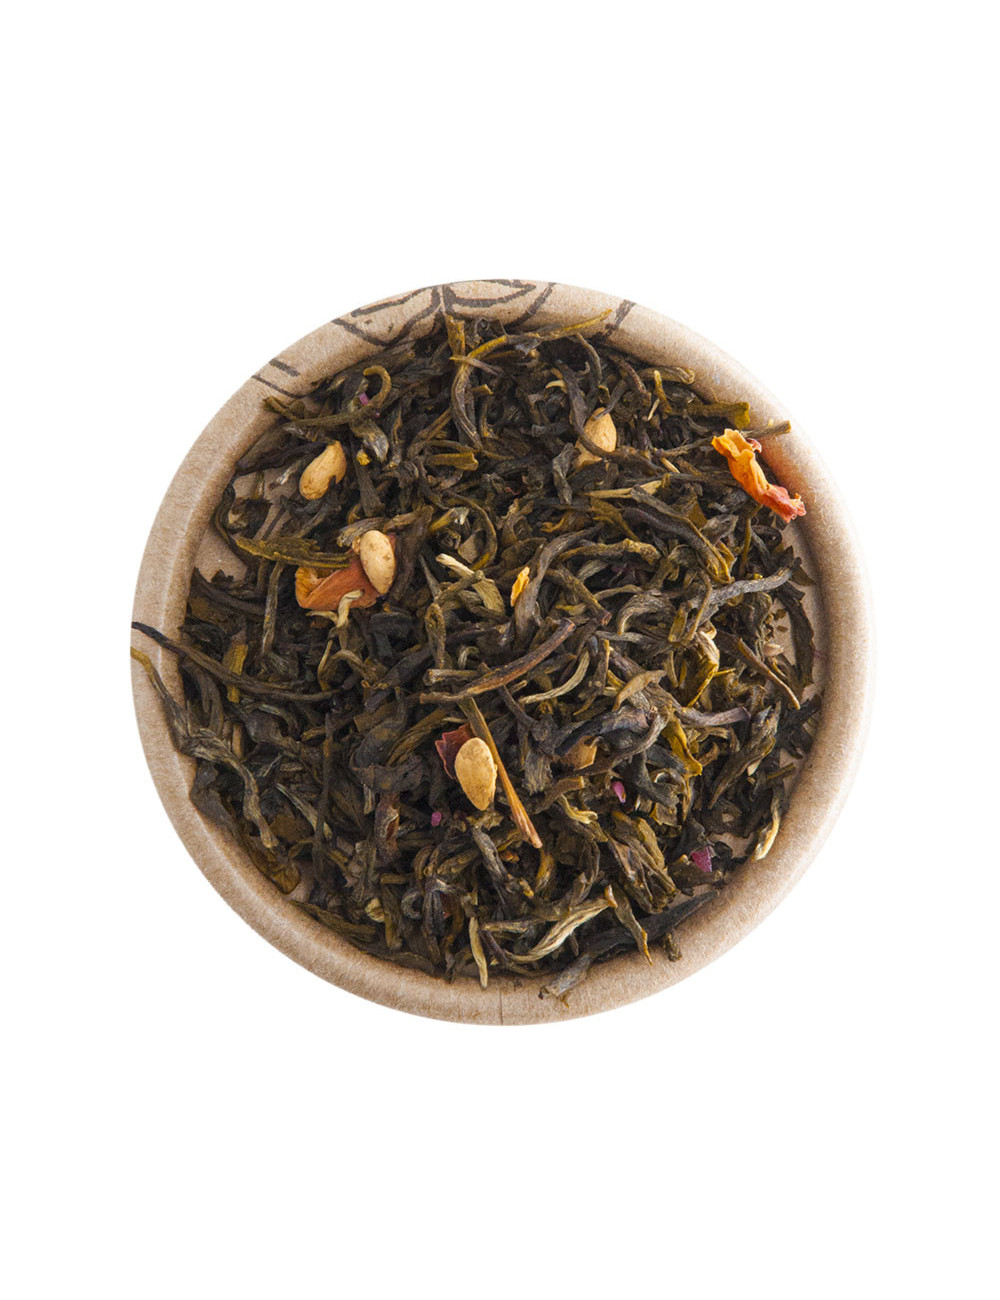 Melograno e Magnolia tè bianco aromatizzato - La Pianta del Tè shop online